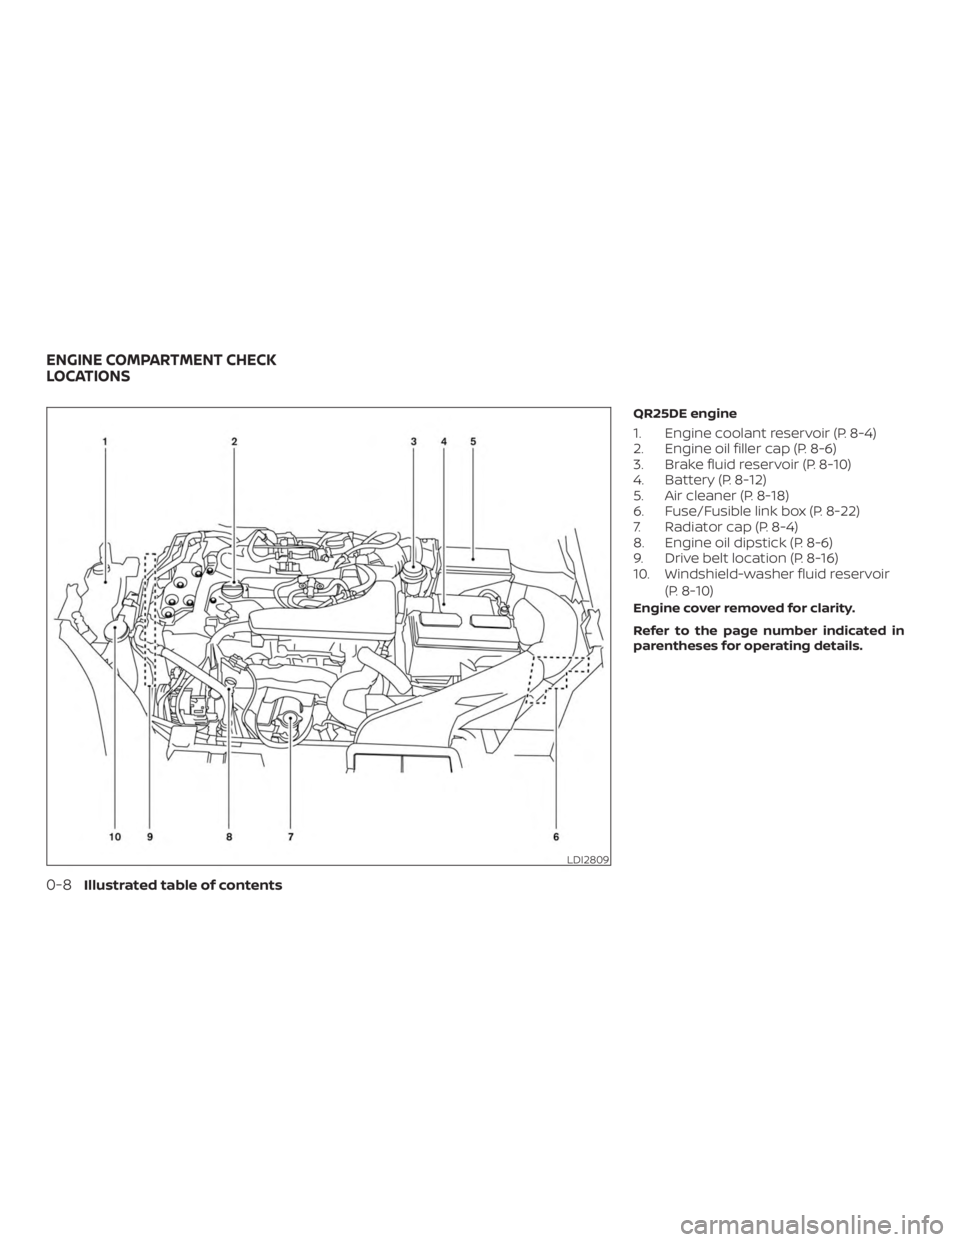 NISSAN ROGUE 2018  Owner´s Manual QR25DE engine
1. Engine coolant reservoir (P. 8-4)
2. Engine oil filler cap (P. 8-6)
3. Brake fluid reservoir (P. 8-10)
4. Battery (P. 8-12)
5. Air cleaner (P. 8-18)
6. Fuse/Fusible link box (P. 8-22)